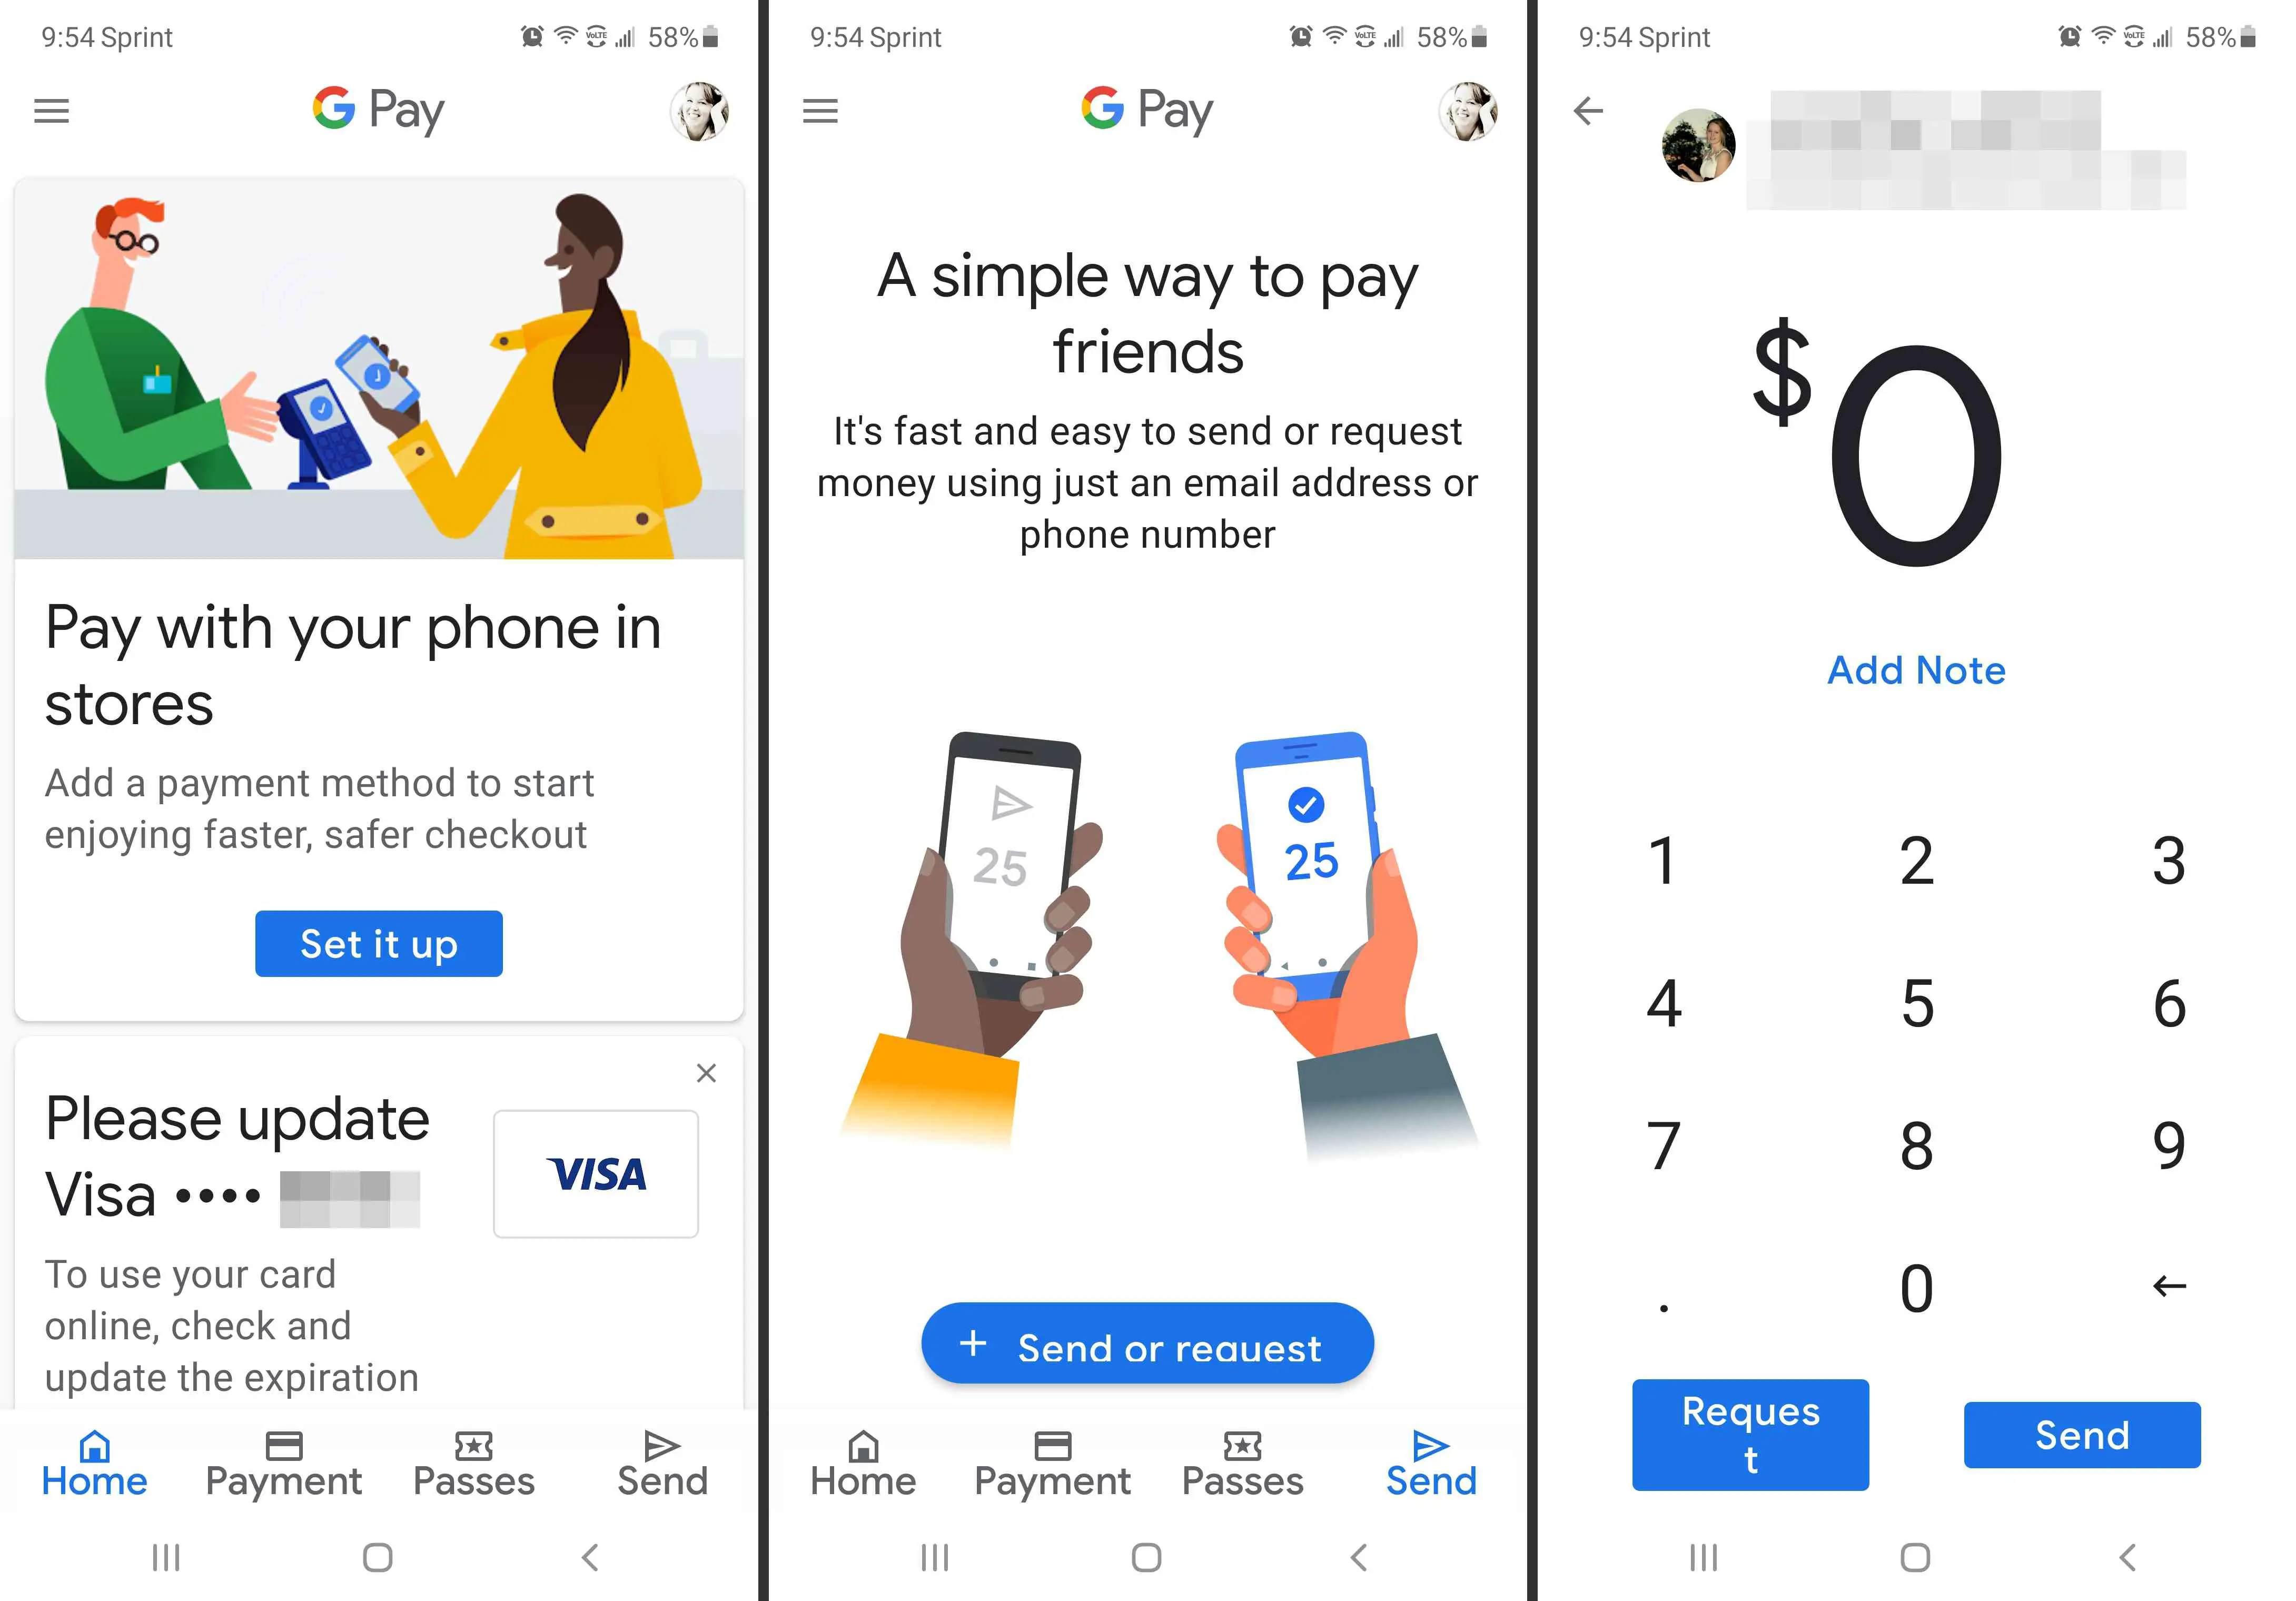 Telas de transferência e pagamento do app Google Pay